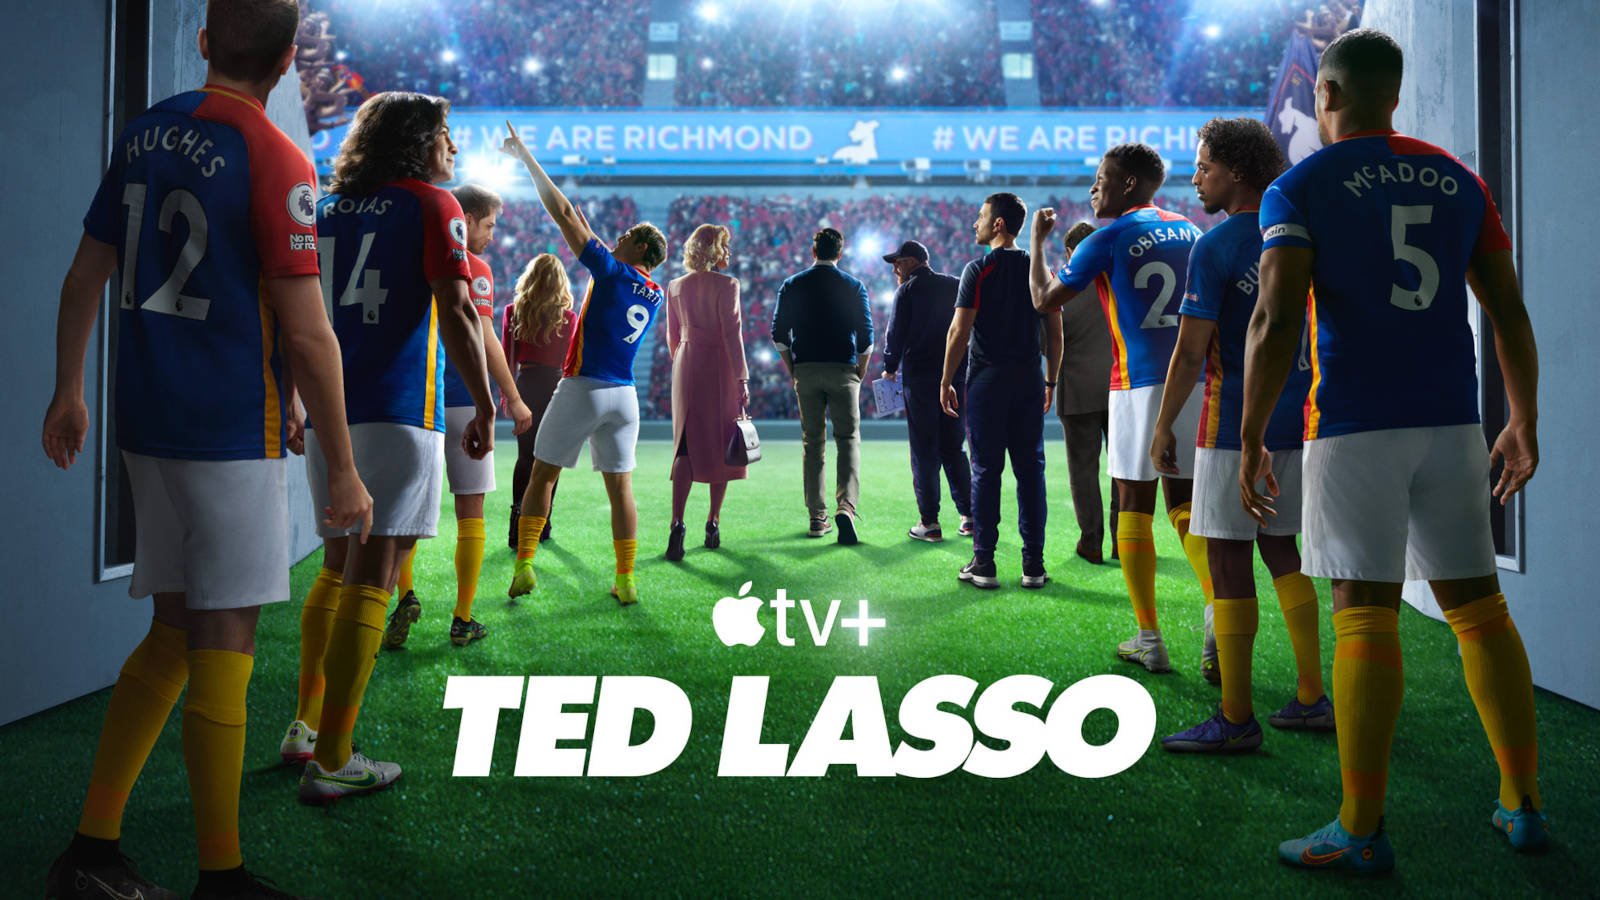 Ted Lasso säsong 3 – premiärdatum och teaser släppt